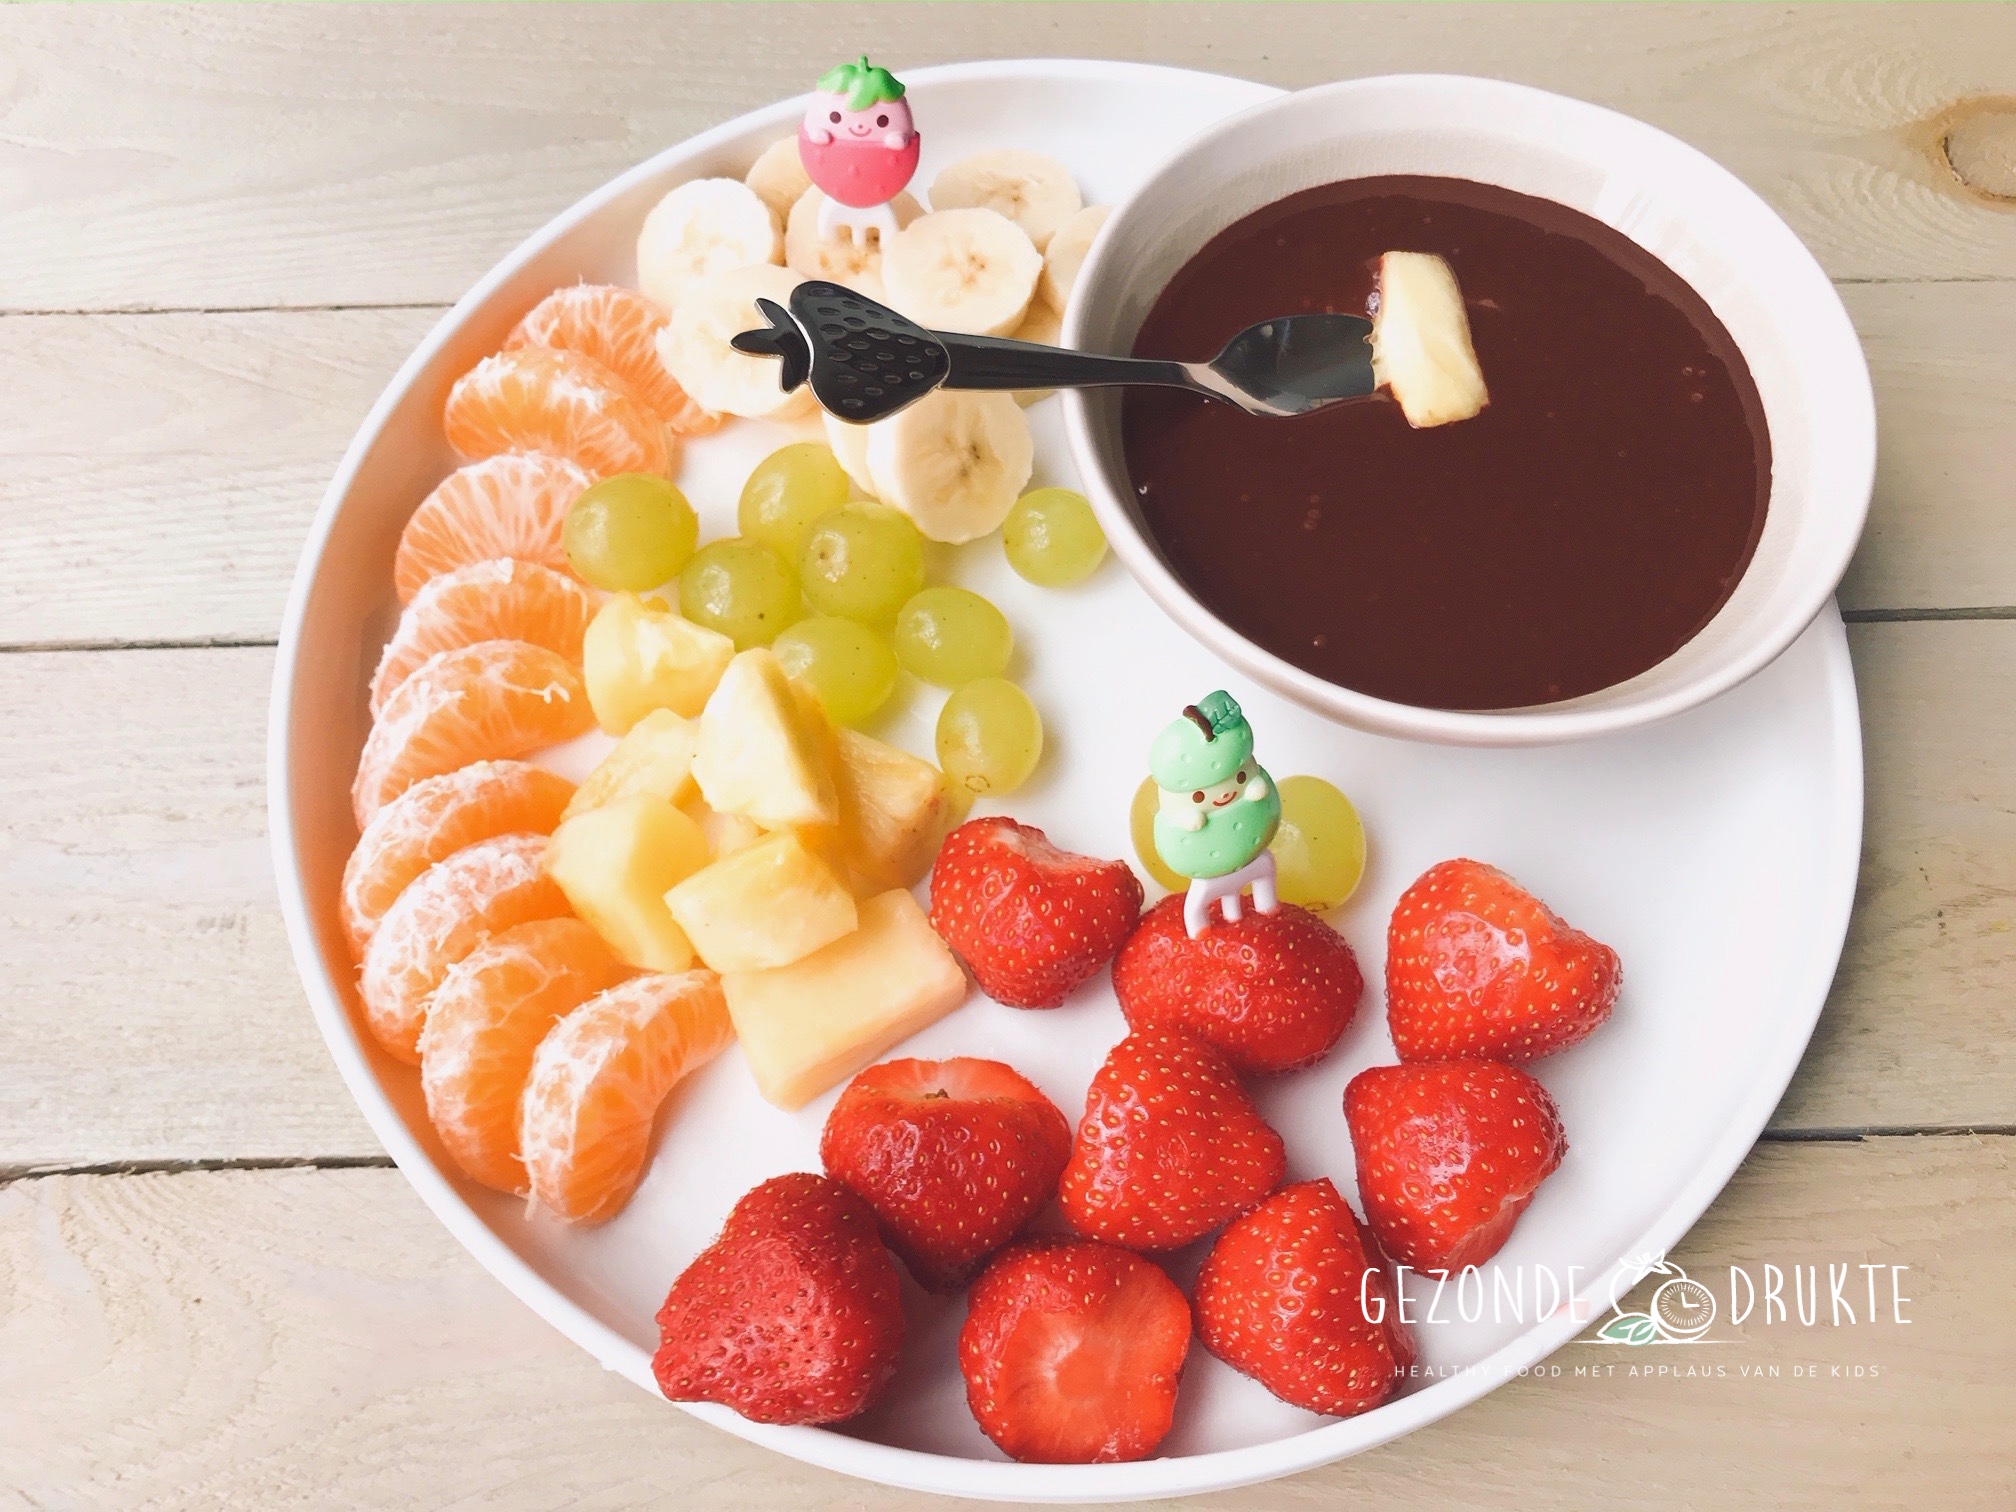 Verbazingwekkend Chocoladefondue met vers fruit, dessertje door Gezonde Drukte DQ-69